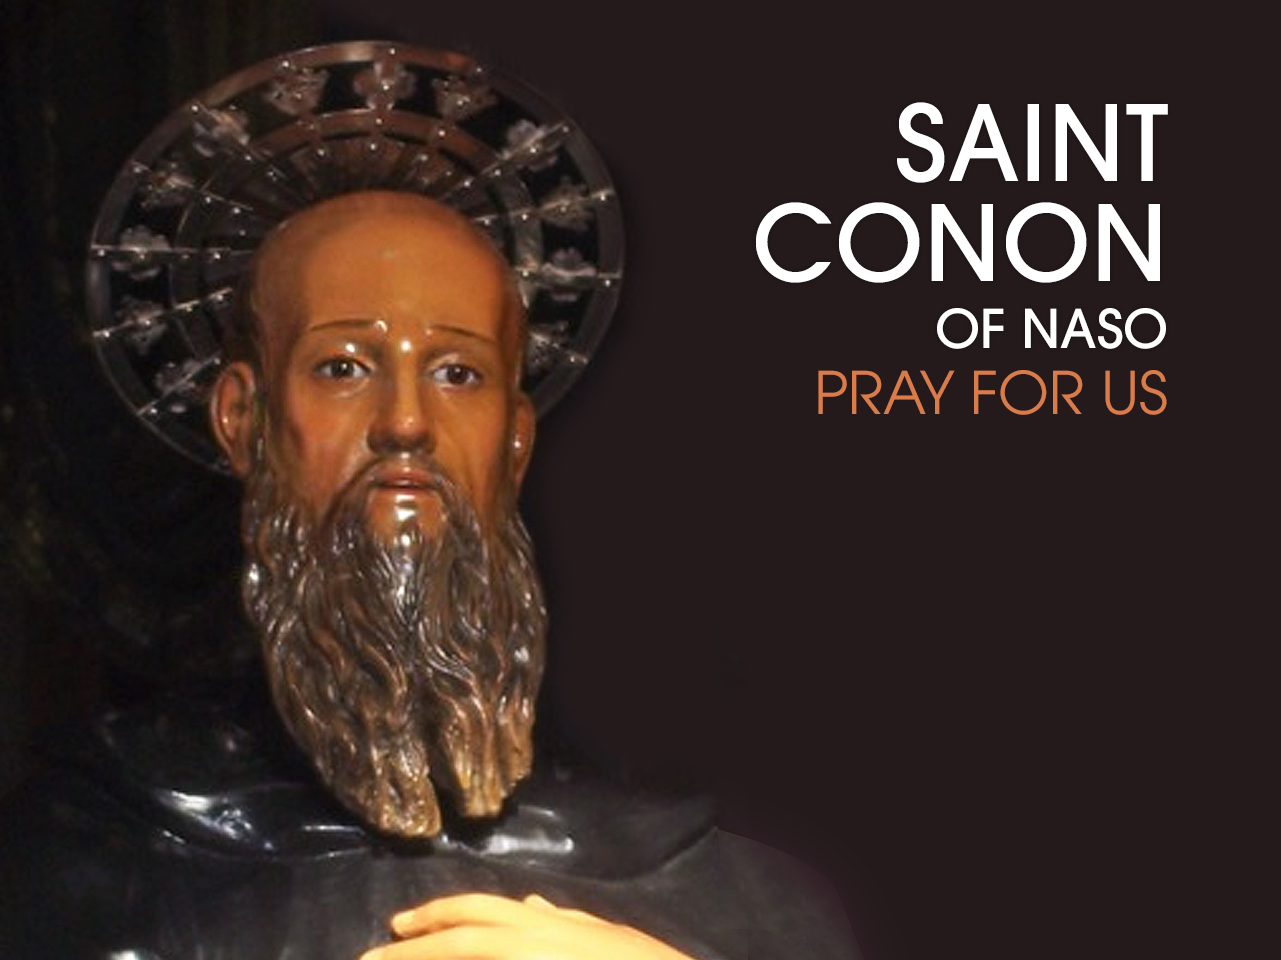 St. Conon of Naso